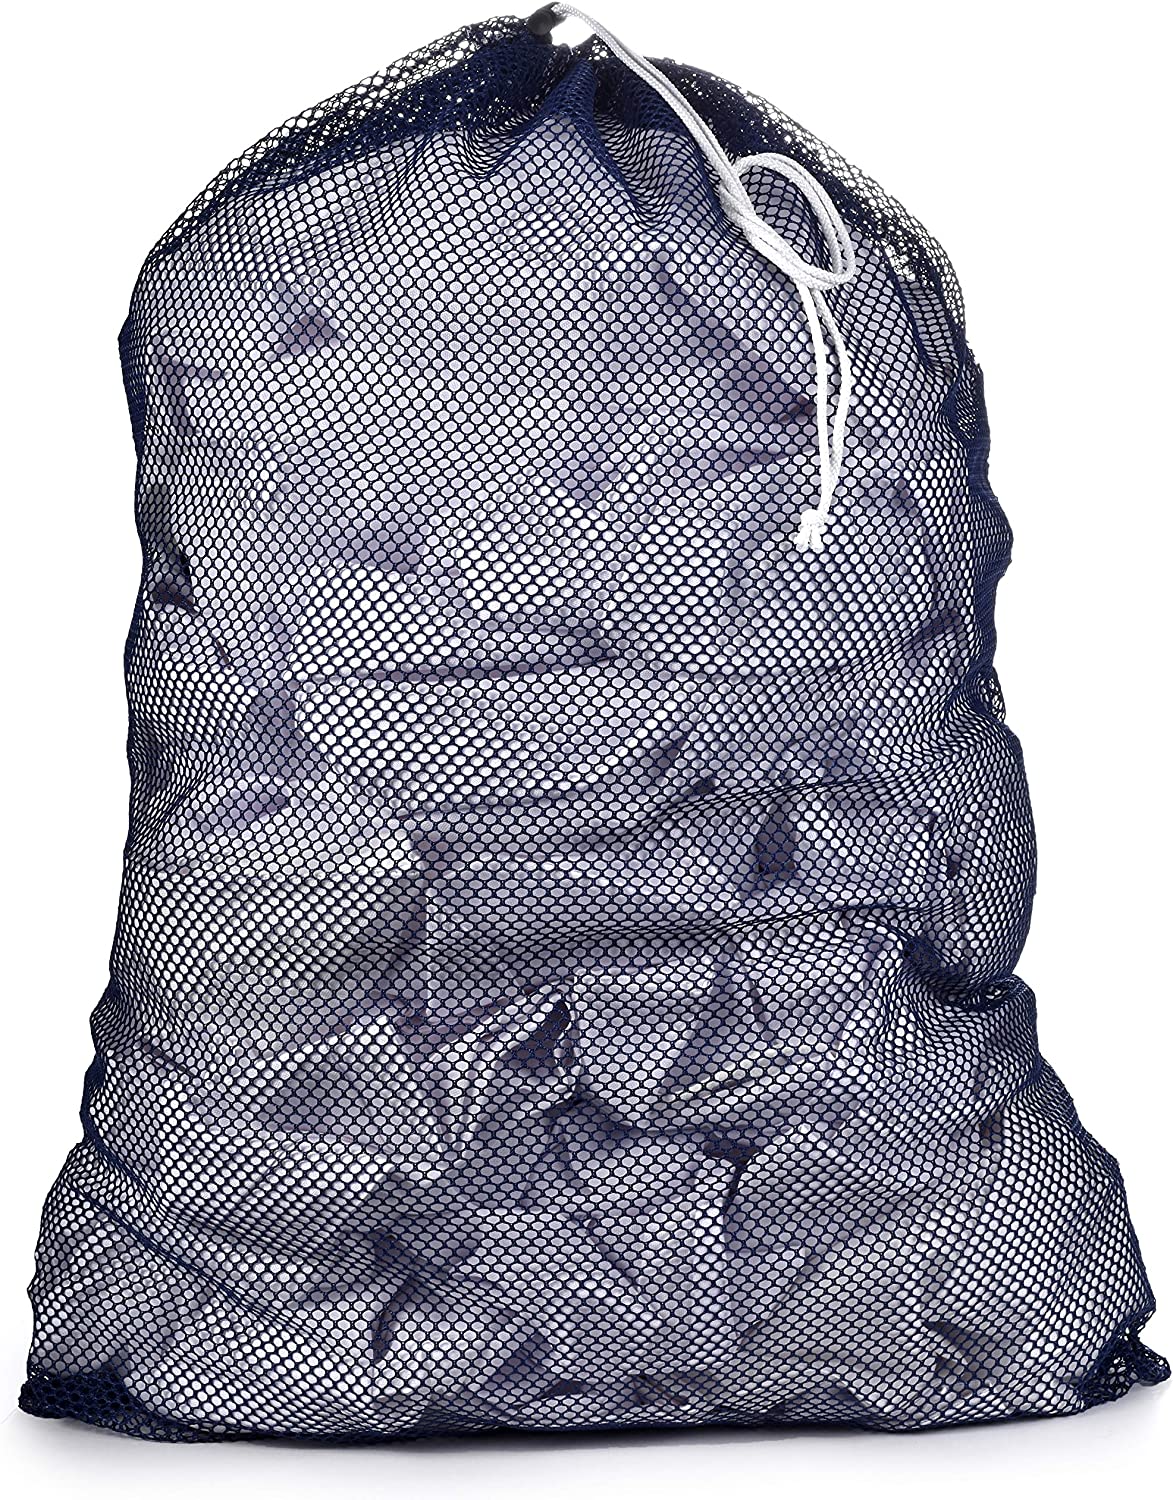 Nylon Laundry Bag – Pack for Camp